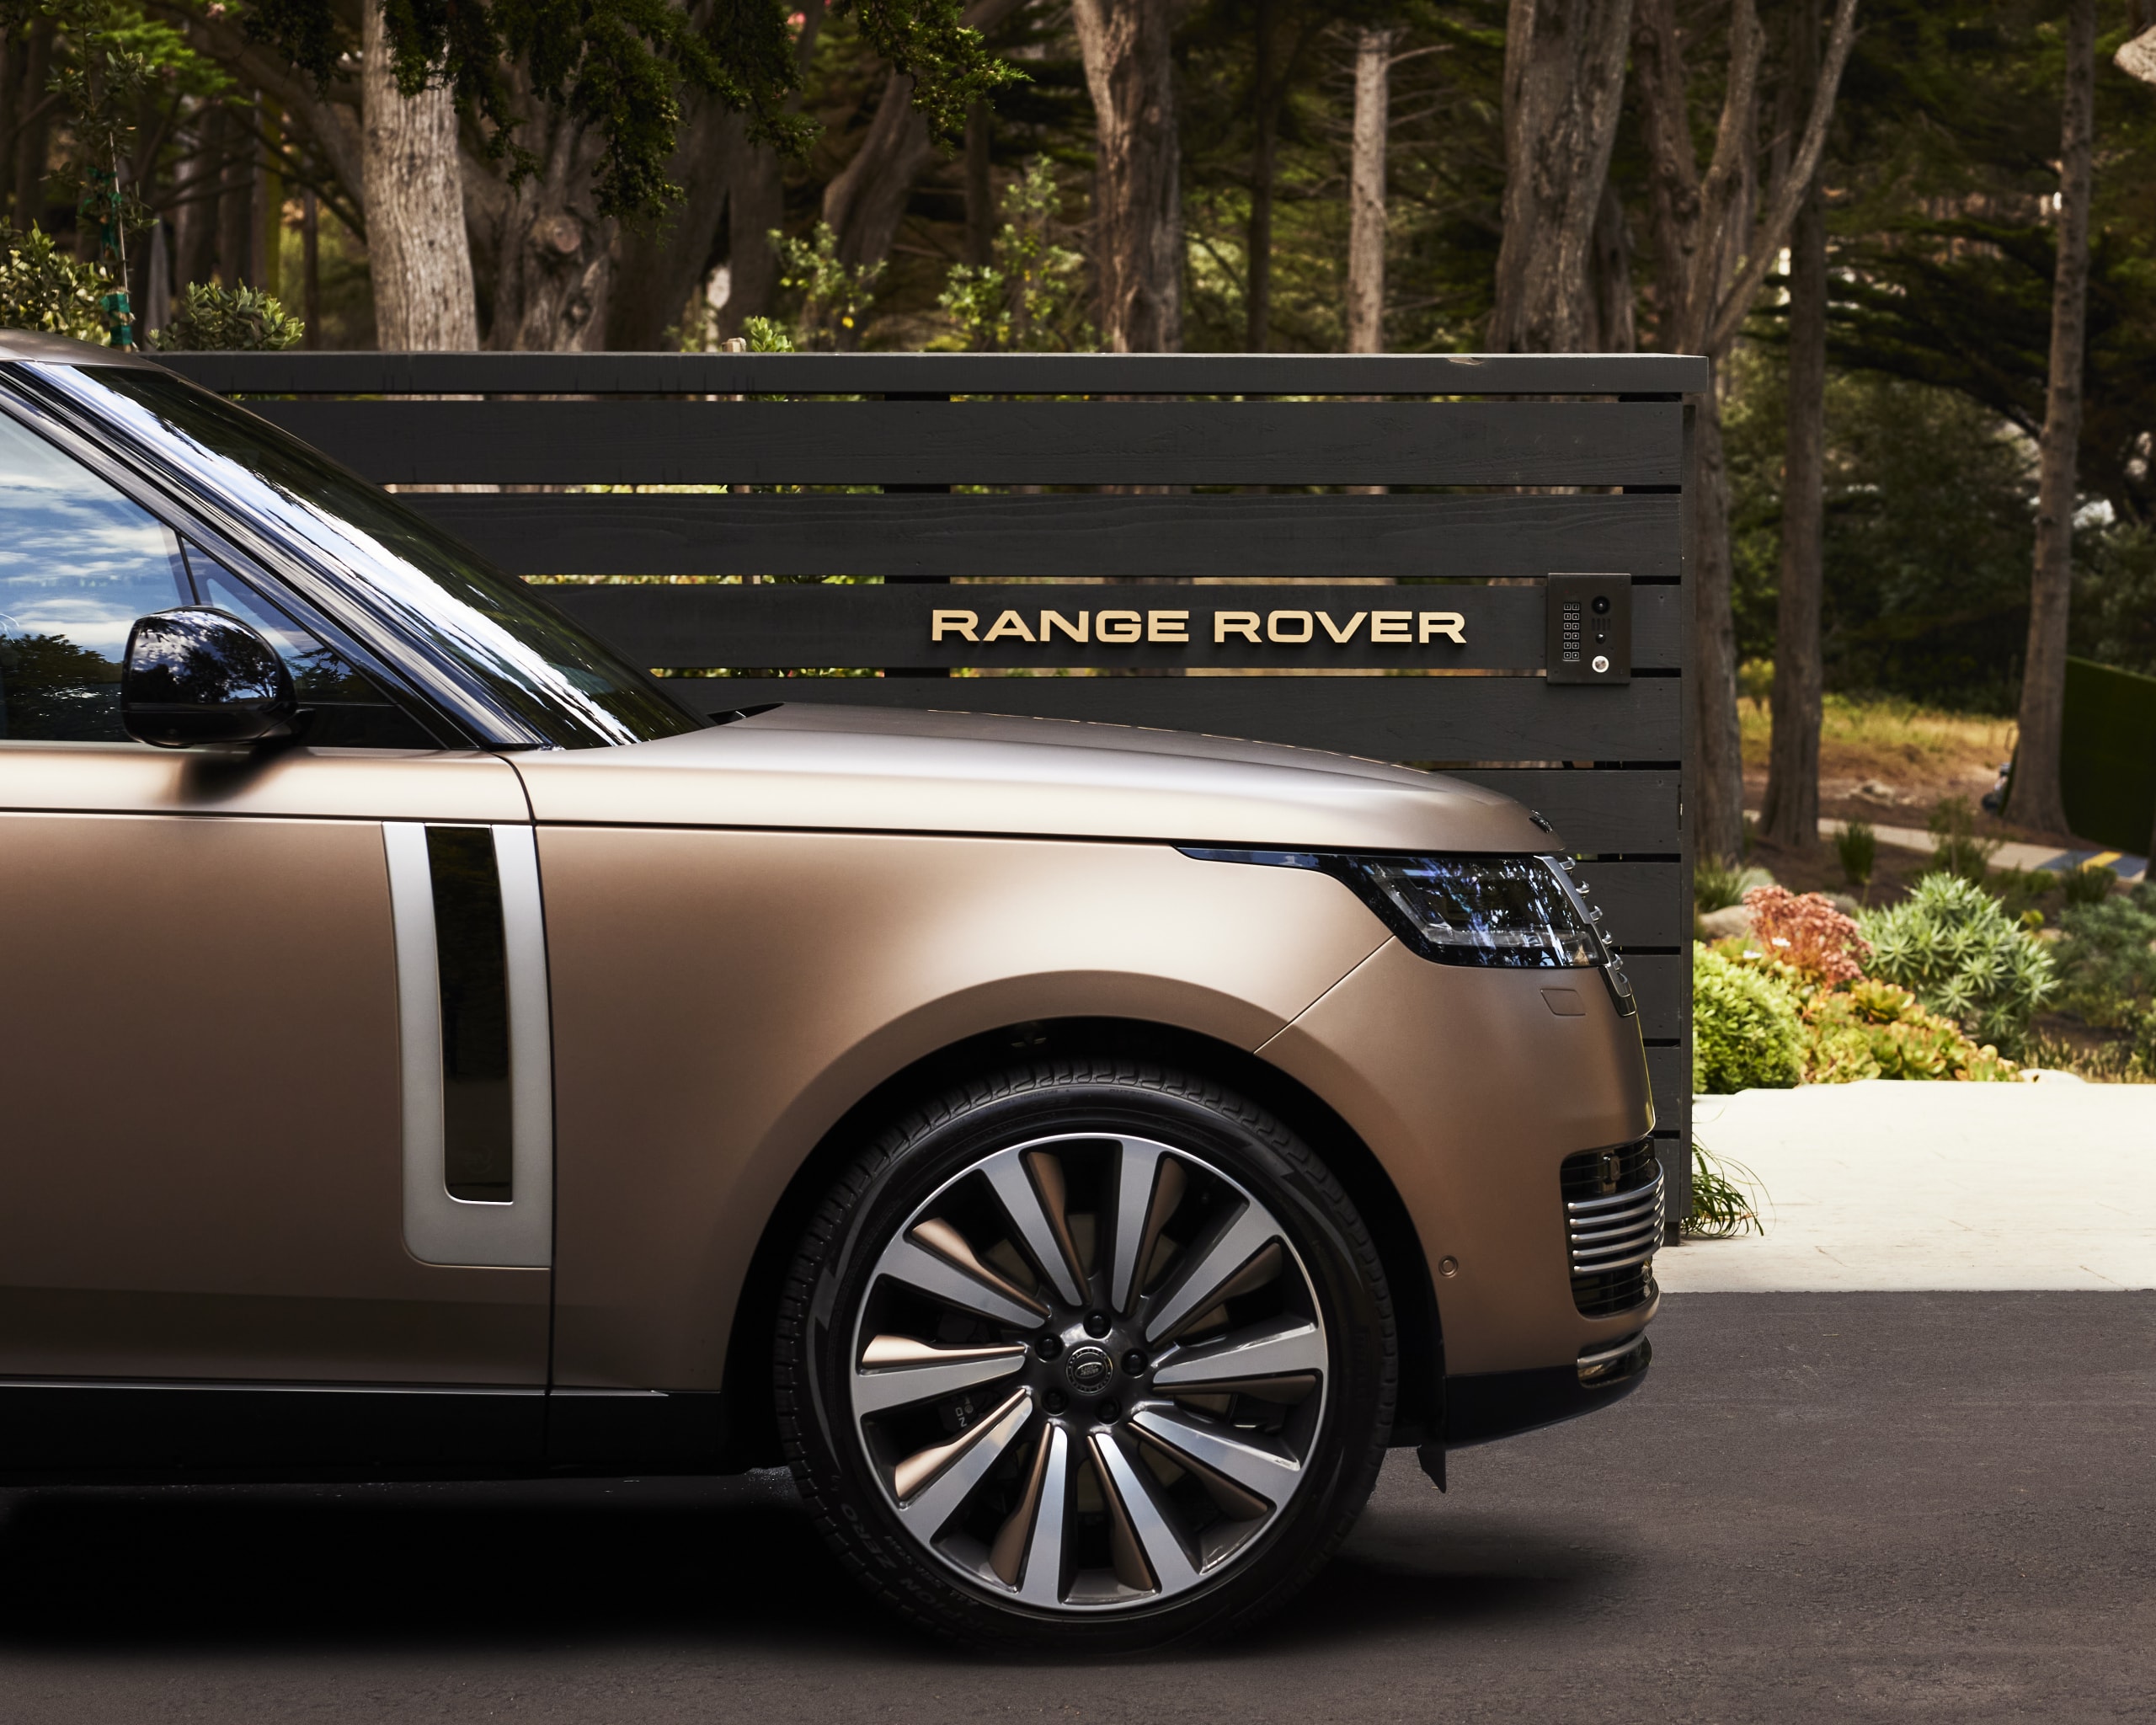 ランドローバーが超高級車 レンジローバーSV カーメルエディションを発表 land rover Range Rover SV Carmel Edition 17 units info release photos car 